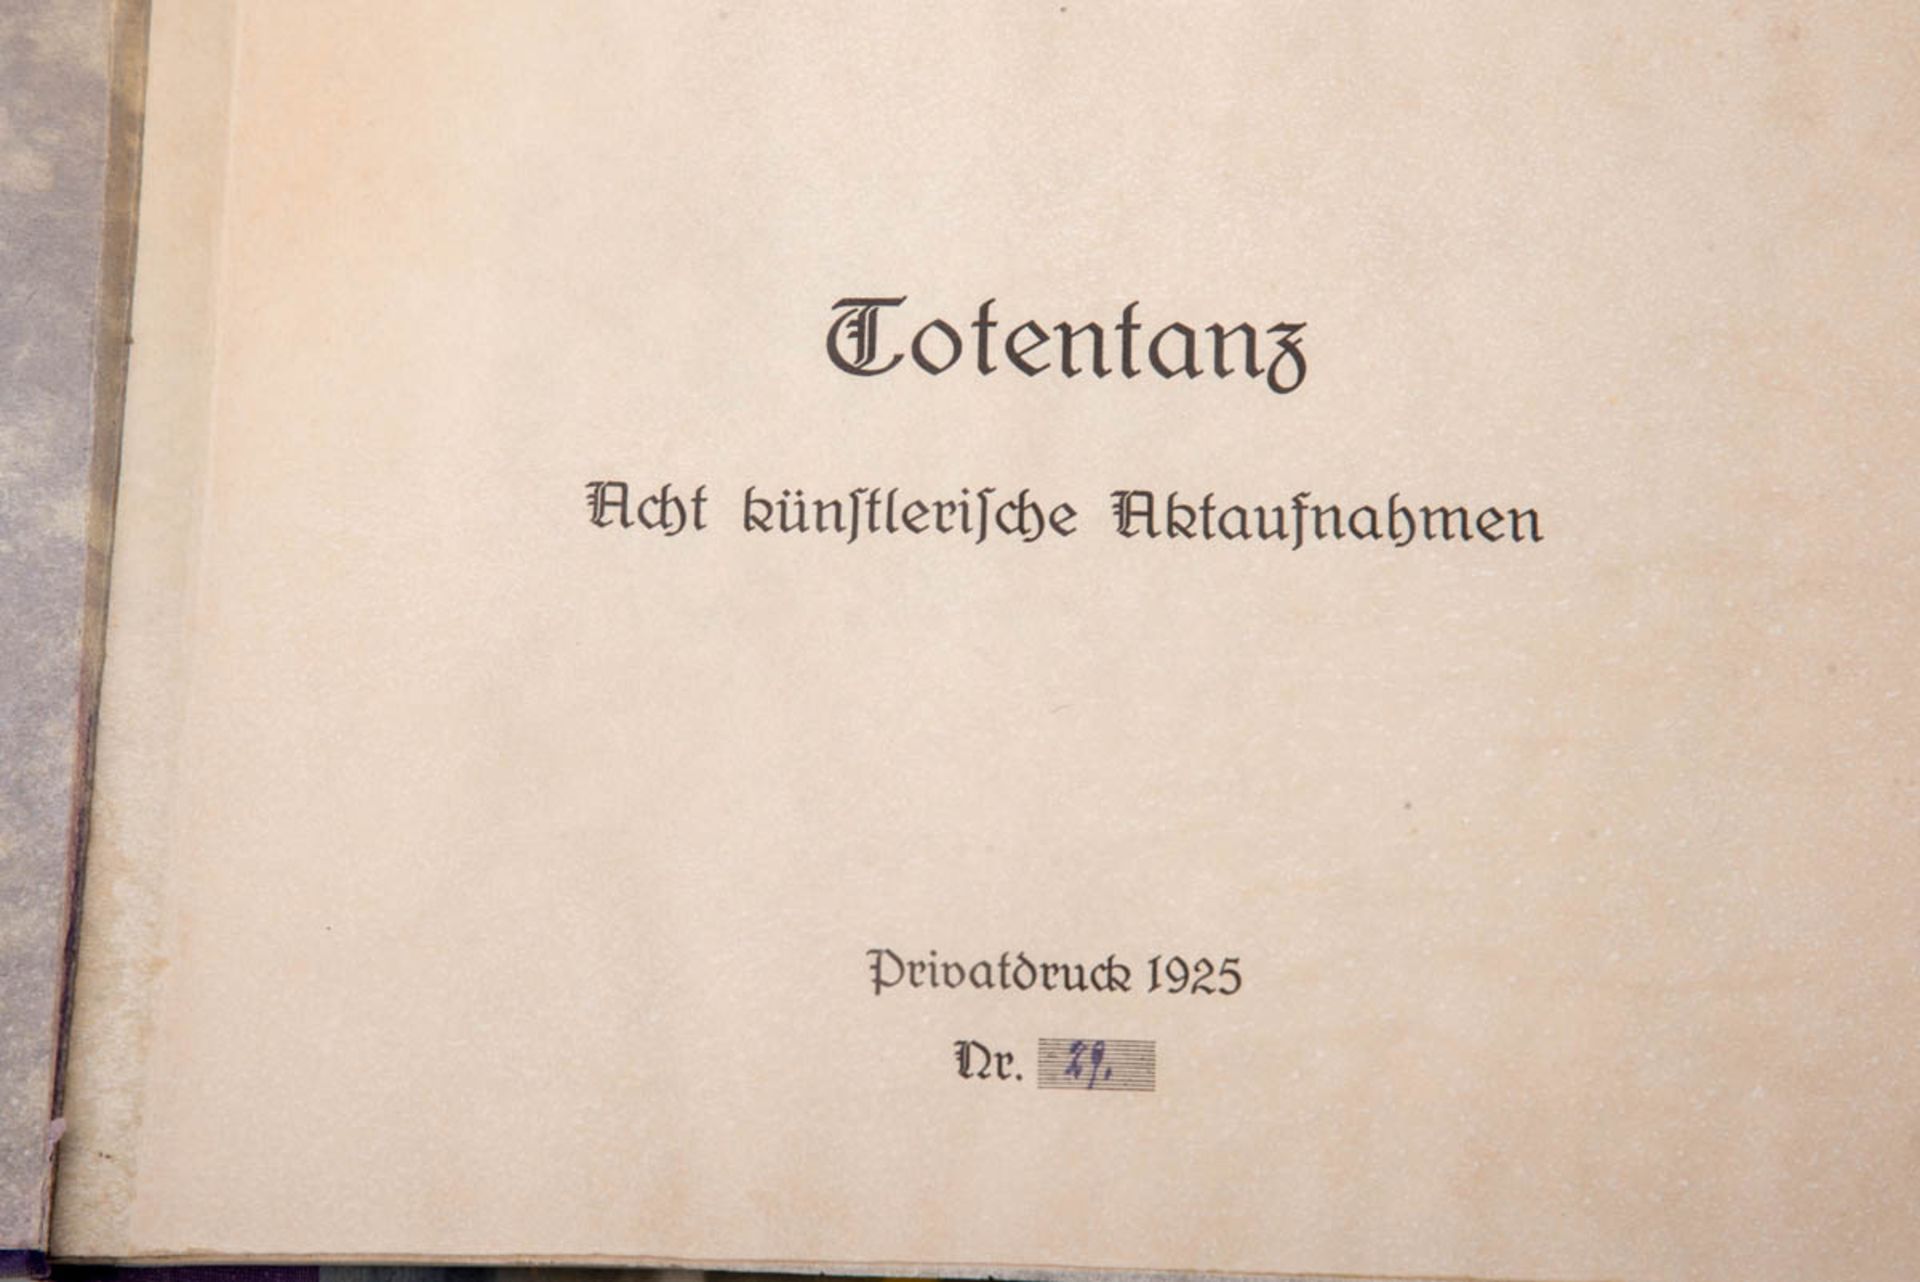 Totentanz8 künstlerische Aktaufnahmen von 1925, Privatdruck Nr,. 29. Gebunden in einer Mappe. 17 x